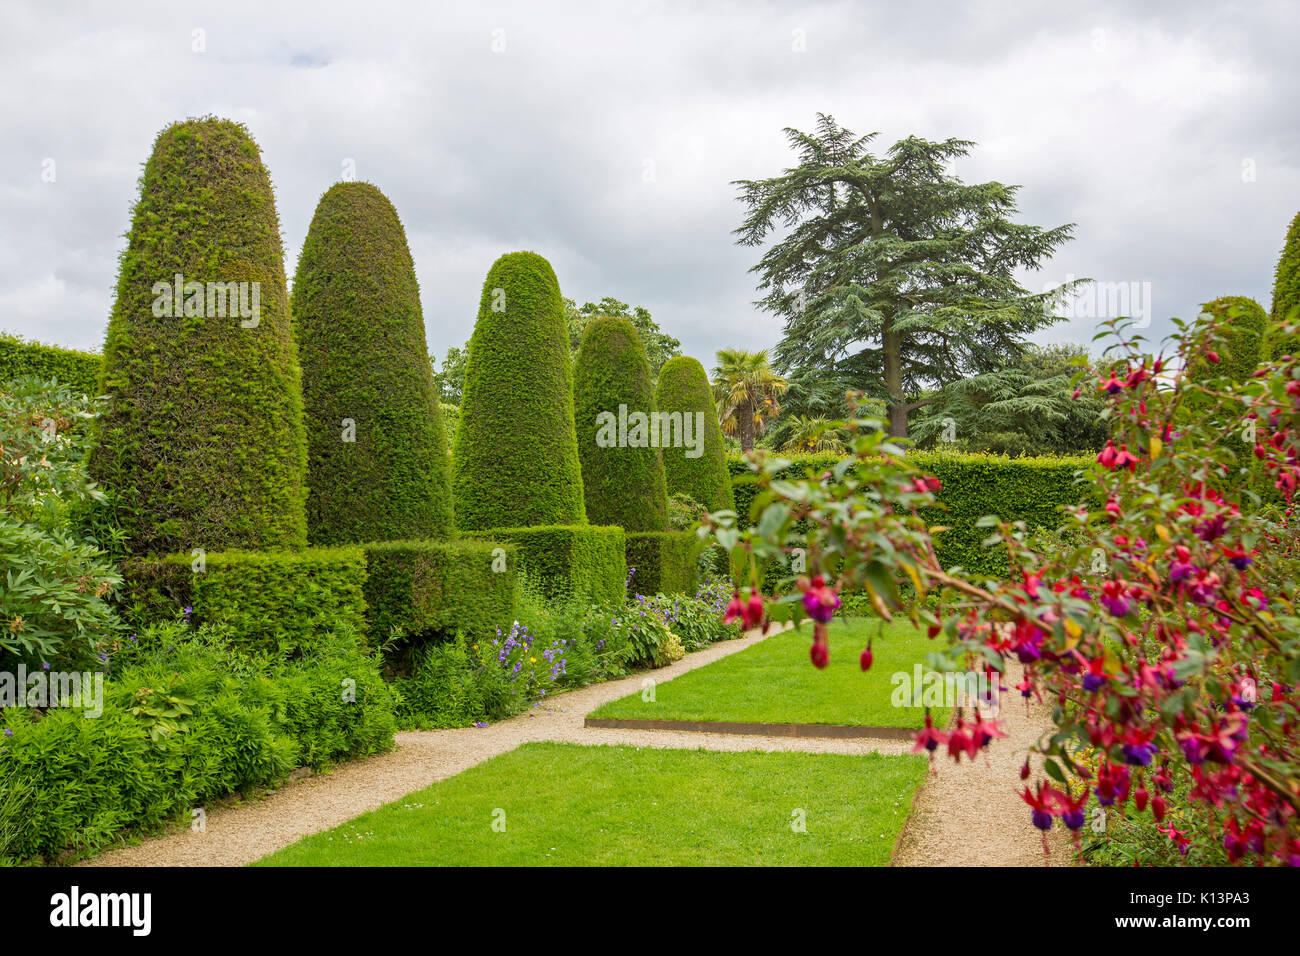 Englischer Garten, bei der die Zeile der Hohe kegelförmige Formgehölze Hecken der Eibe neben smaragdgrünen Rasen und gepflegte Wege Stockfoto